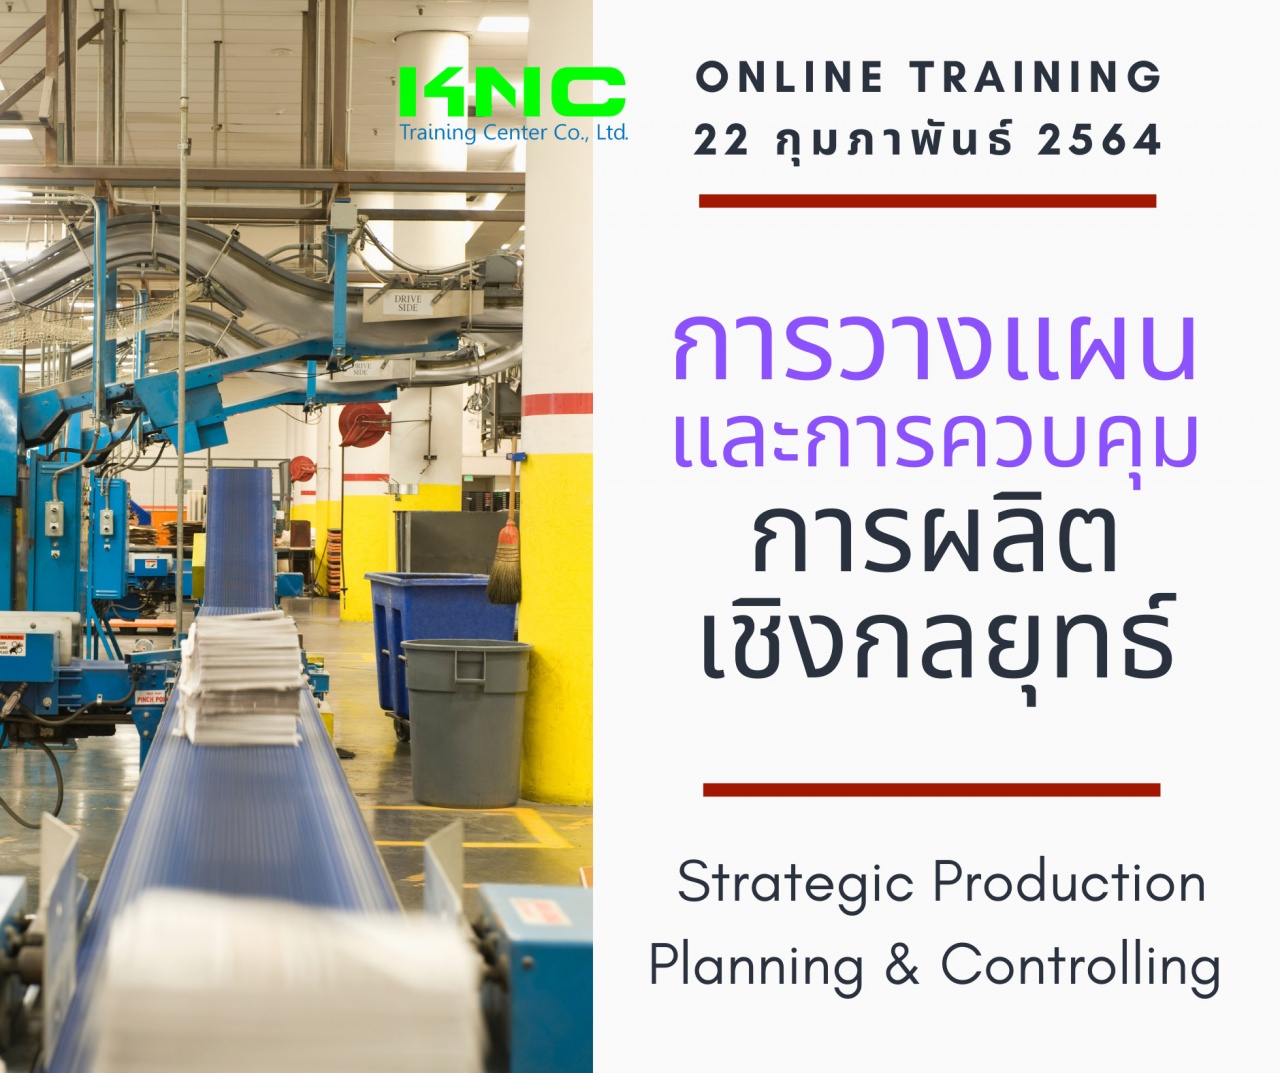 สัมมนา Online : การวางแผนและการควบคุมการผลิตเชิงกลยุทธ์ (Strategic Production Planning & Controlling)